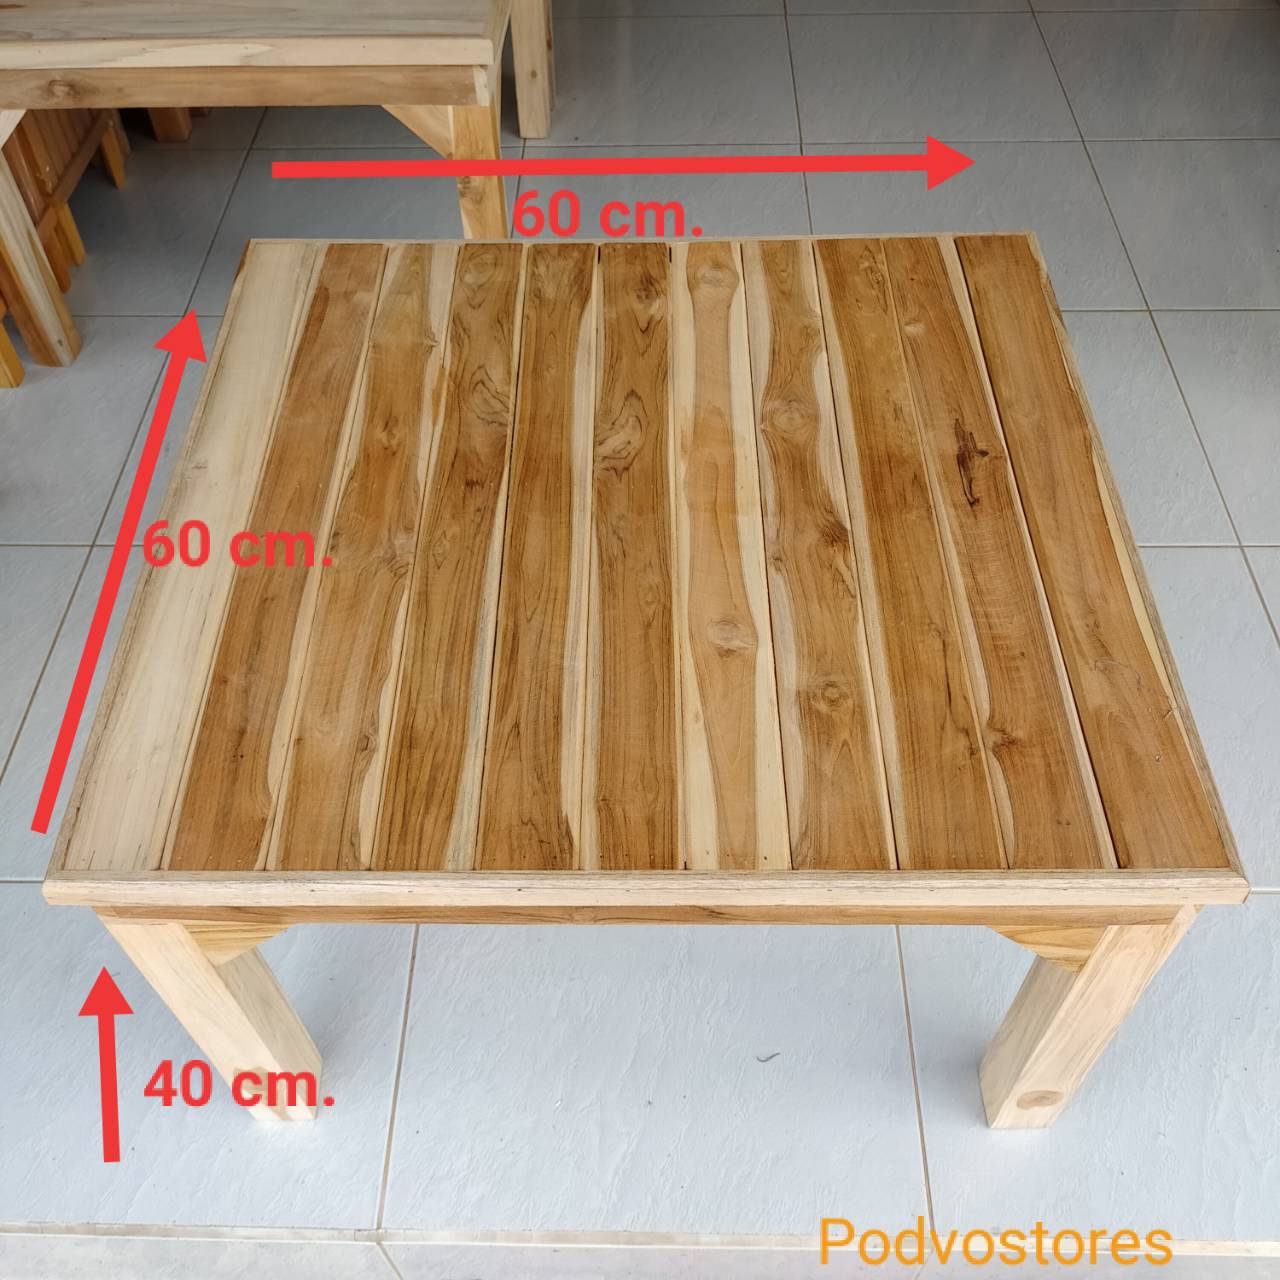 โต๊ะไม้สัก โต๊ะญี่ปุ่น (กว้าง 60 cm. ยาว 60 cm. สูง 40 cm.) ทำจากไม้สัก งานดิบไม่ได้ทำสี โต๊ะวางของ ที่วางของ โต๊ะตัวเตี้ย โต๊ะปิ๊กนิก โต๊ะขนาดเ